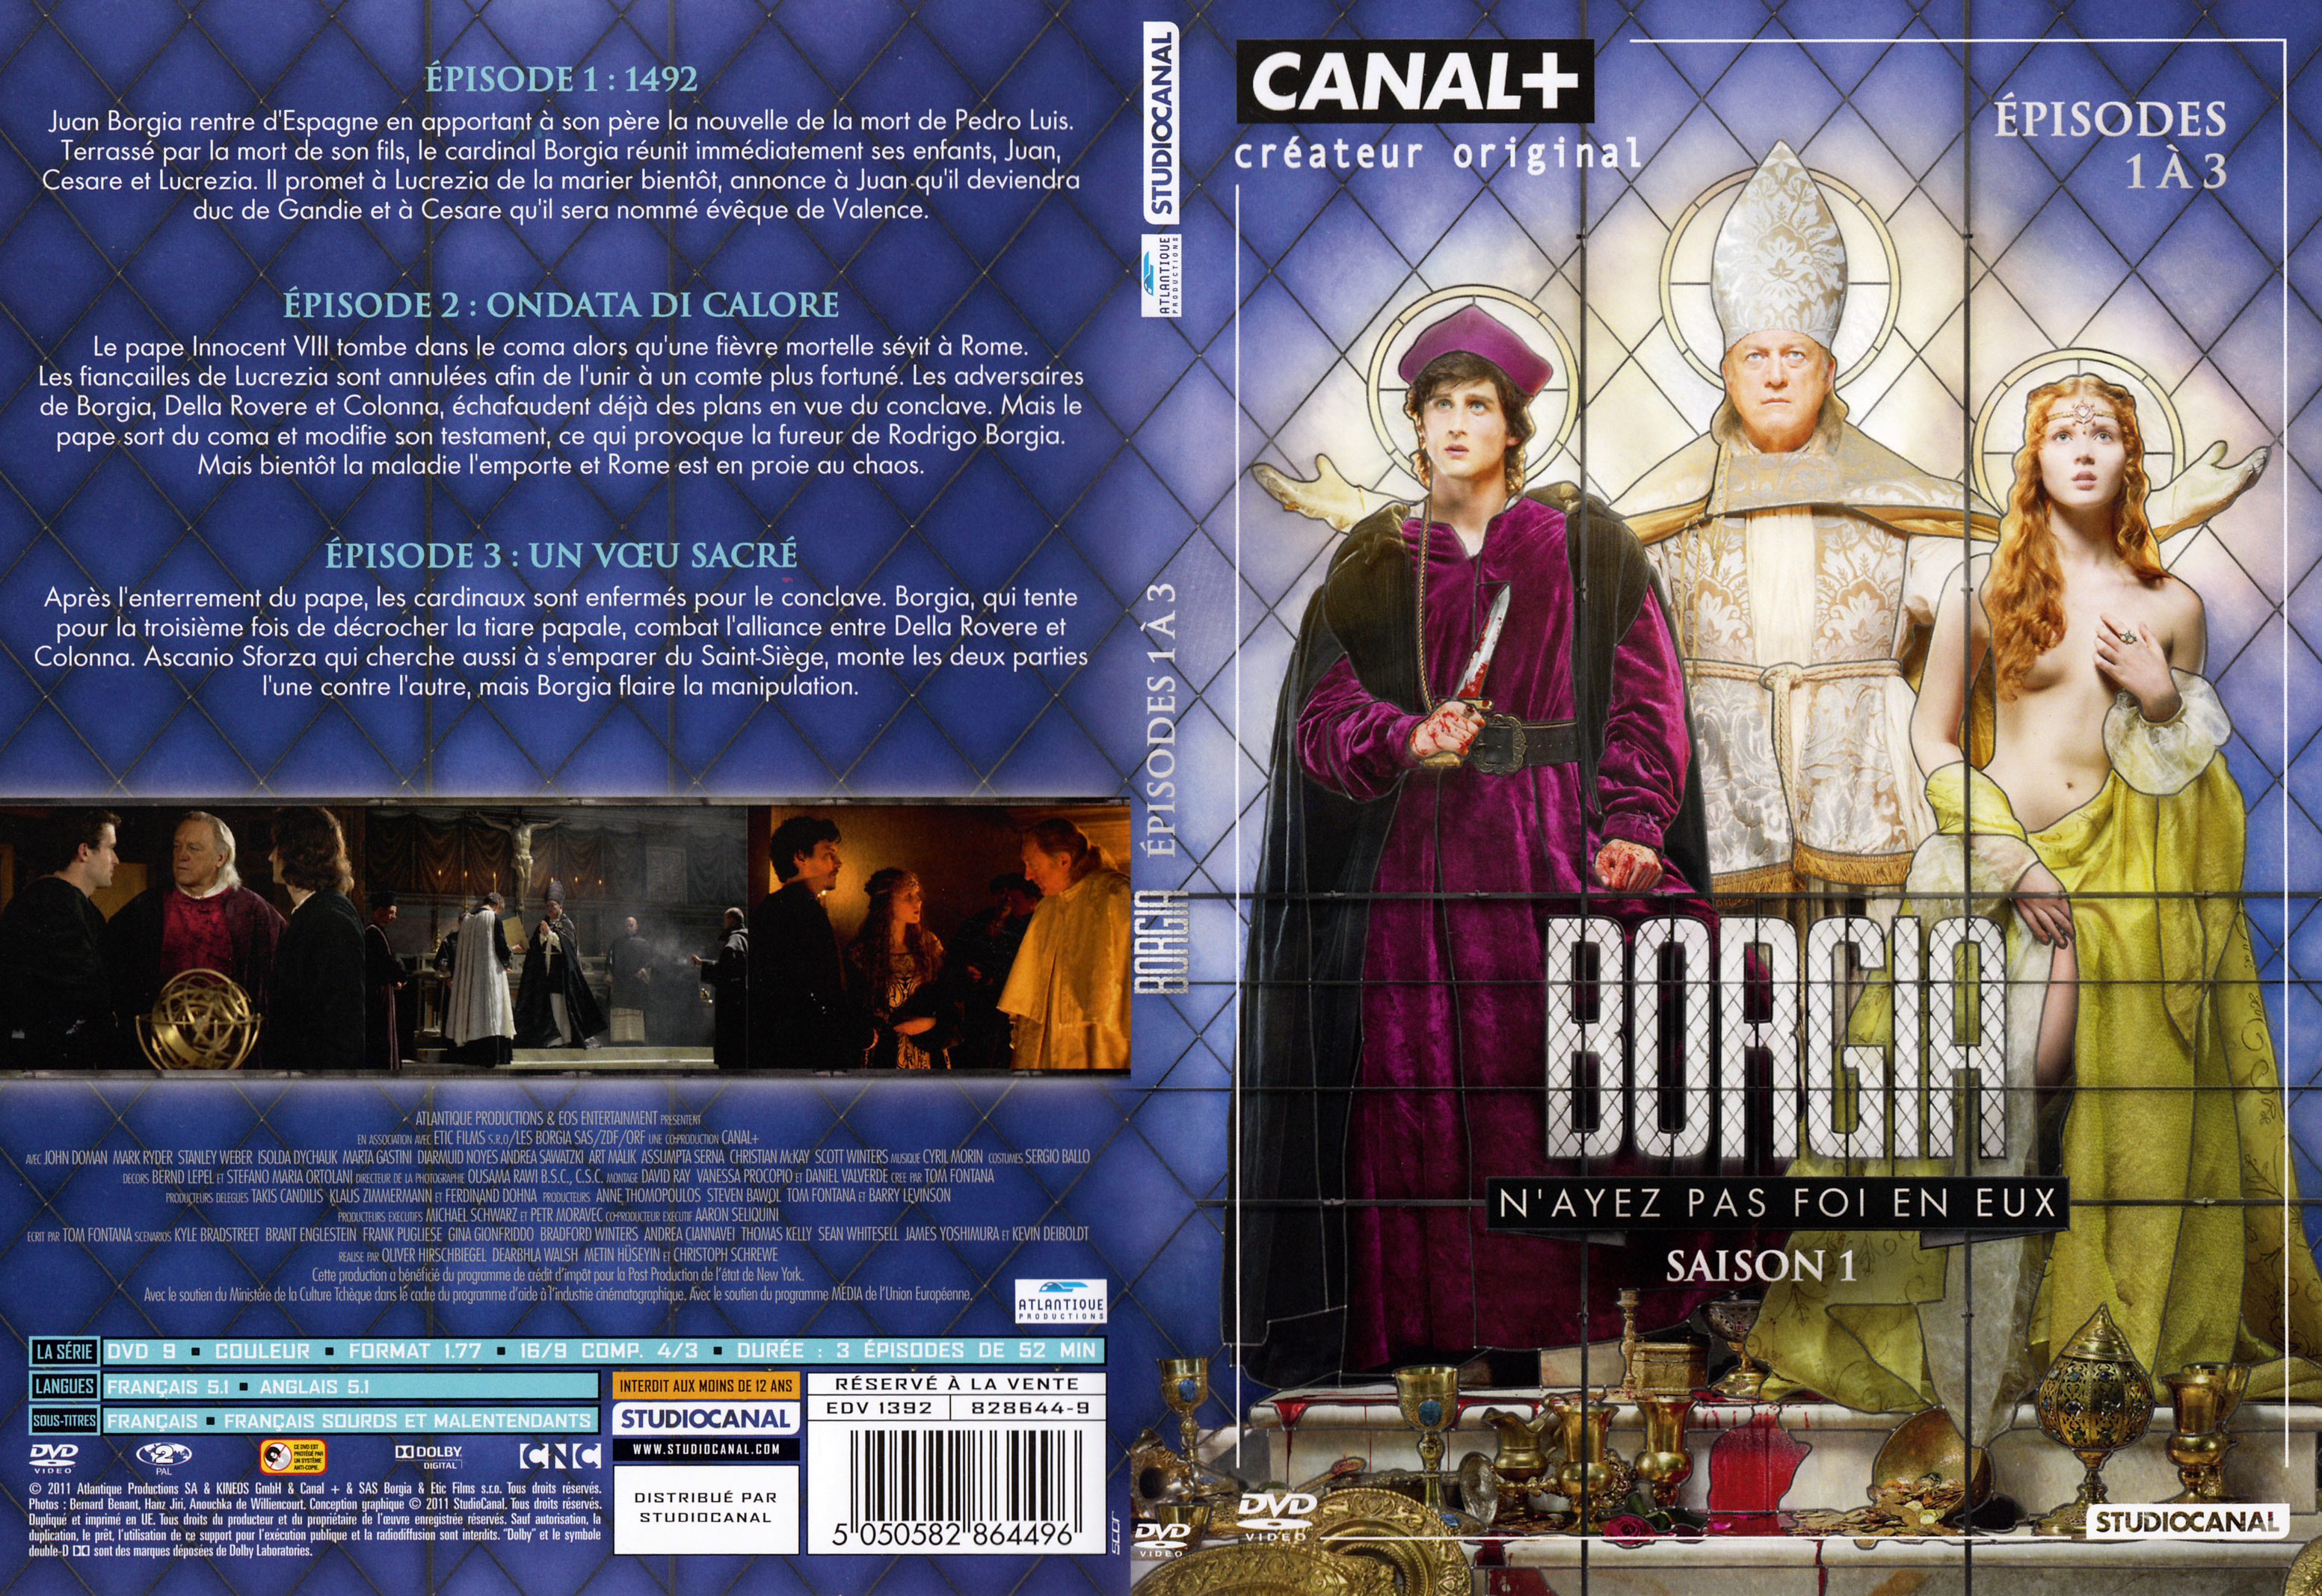 Jaquette DVD Borgia Saison 1 DVD 1 v2